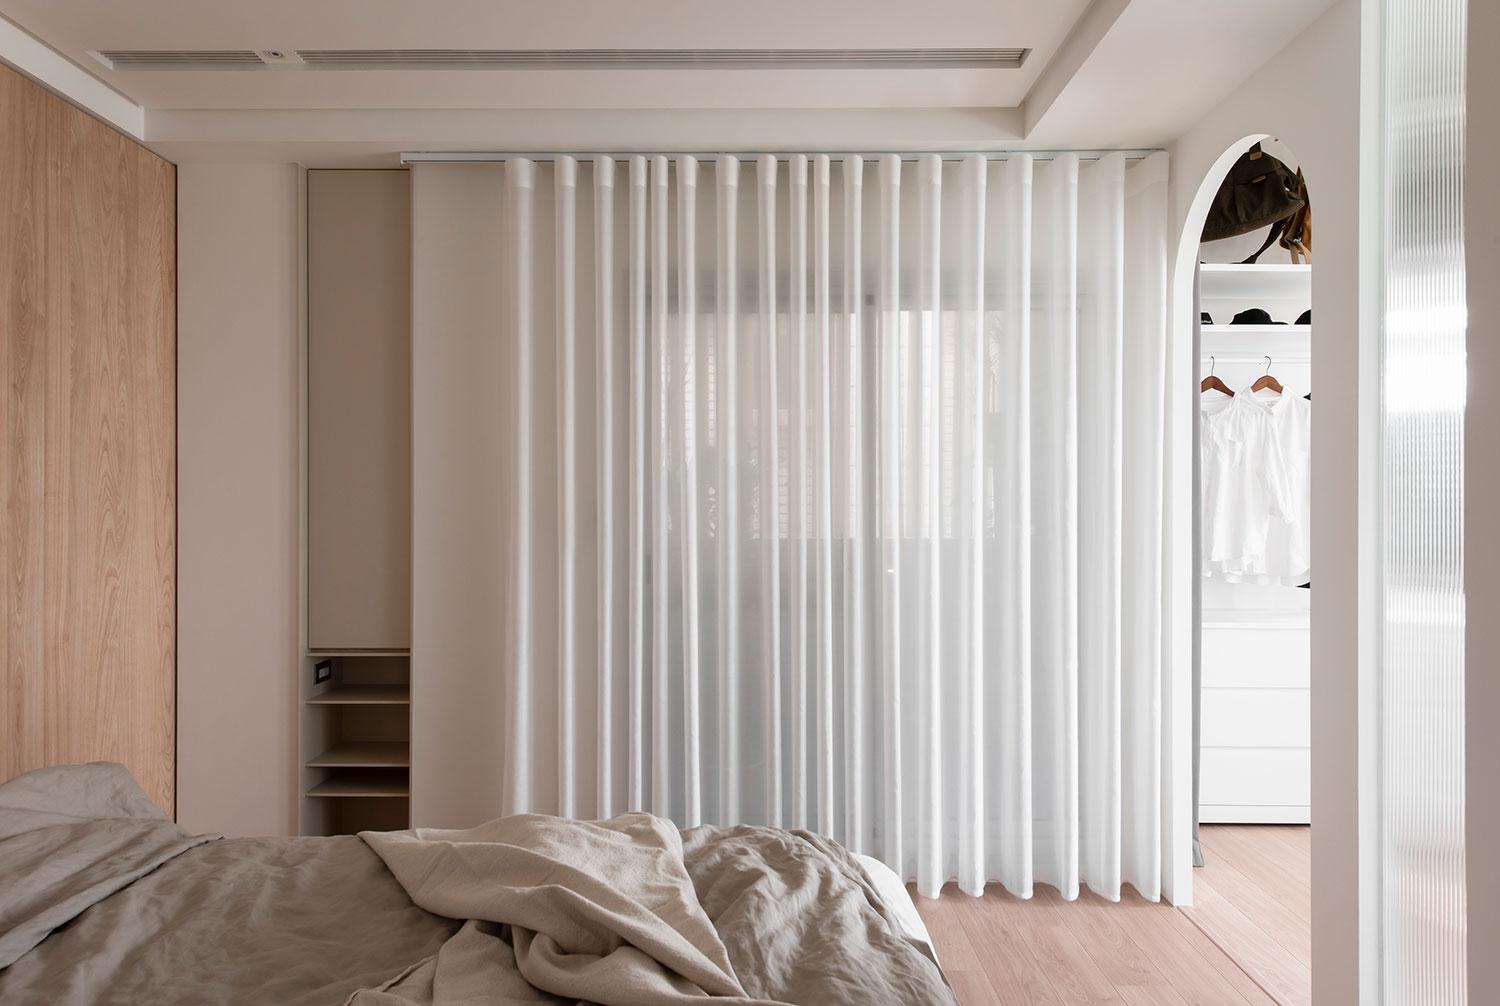 Thiết kế nội thất theo phong cách Scandinavian - Cộng Design